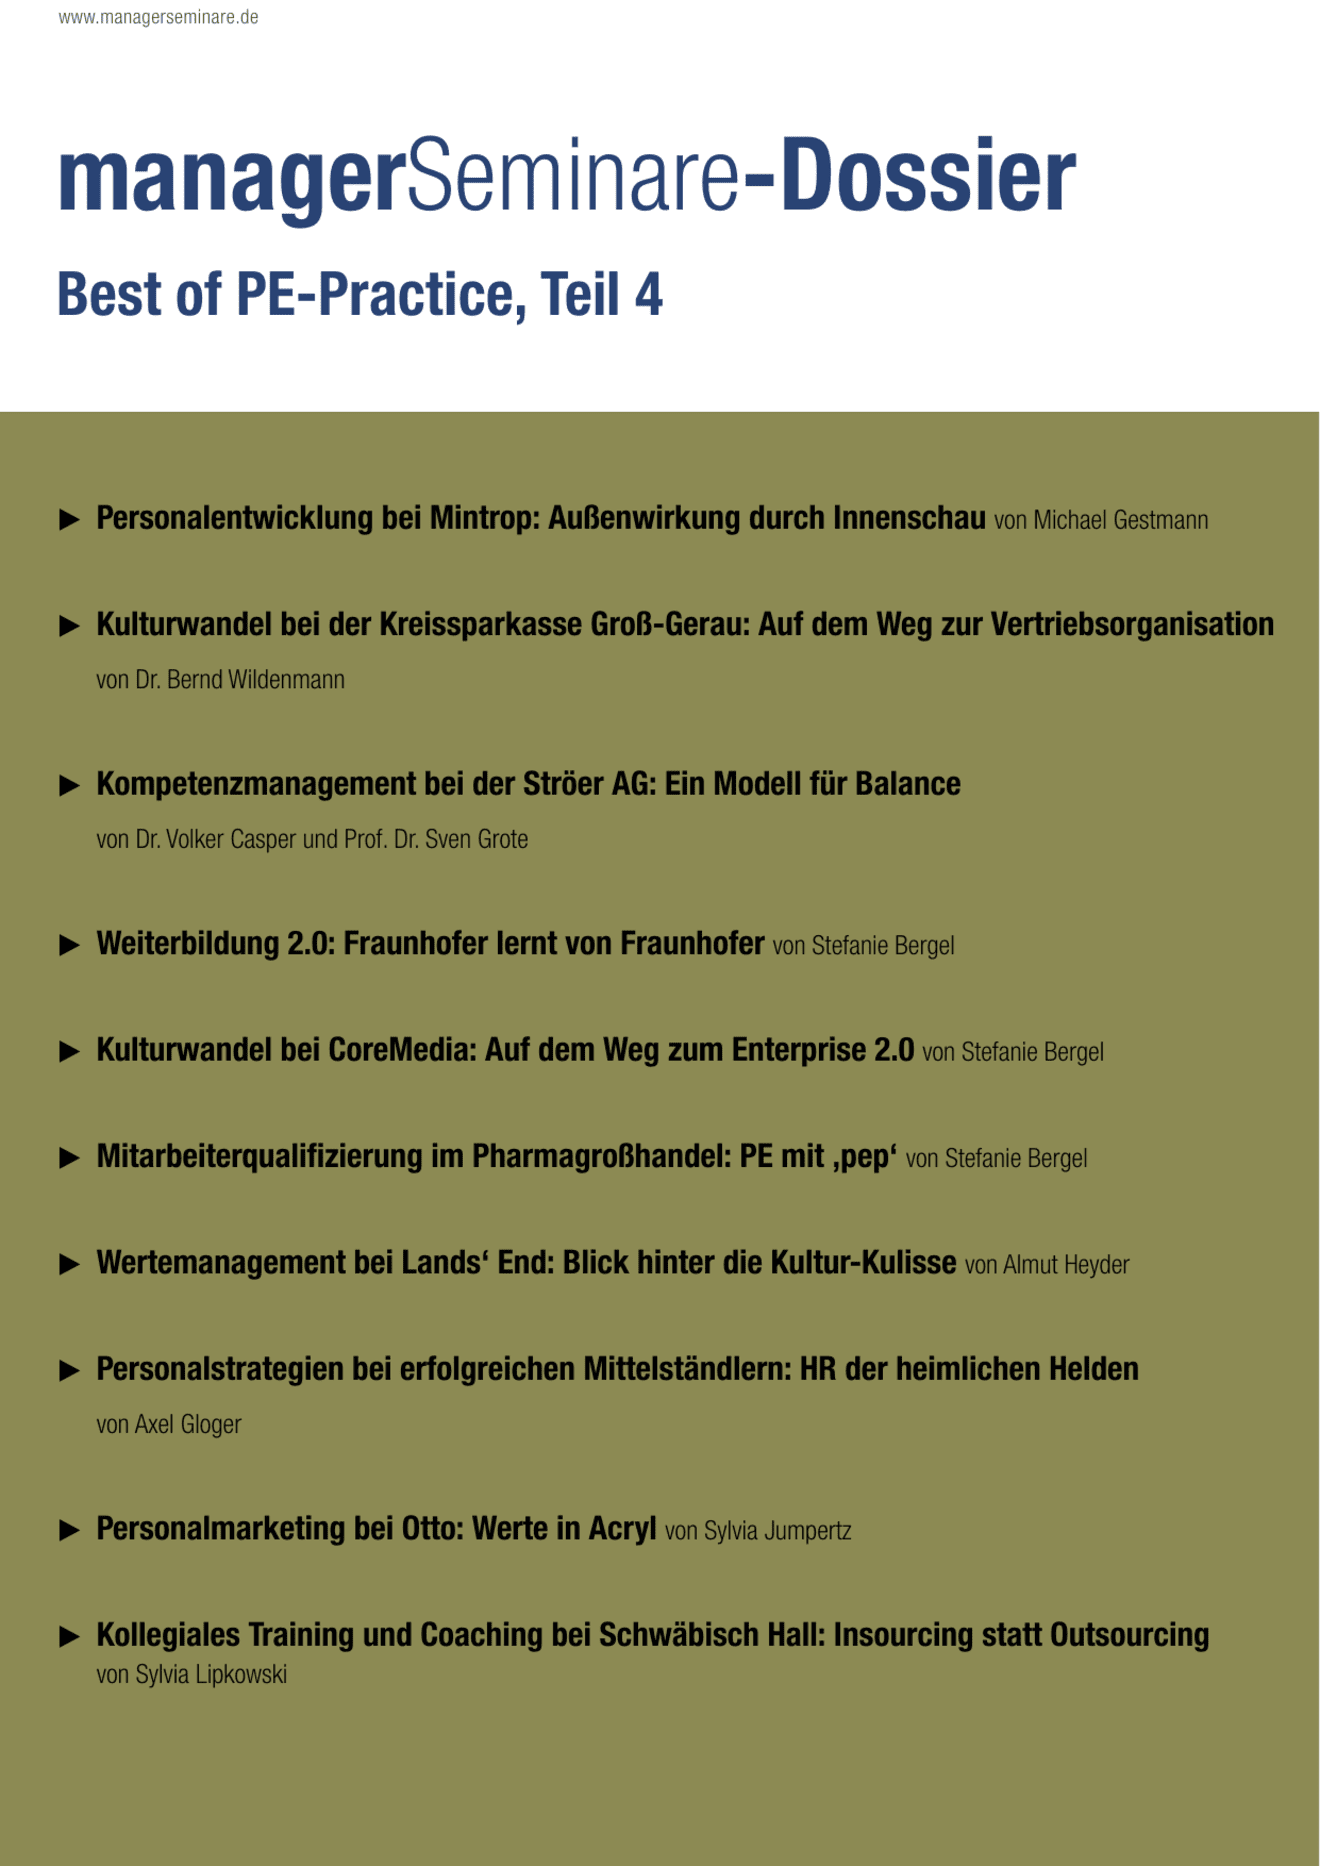 Dossier Best of PE-Practice, Teil 4